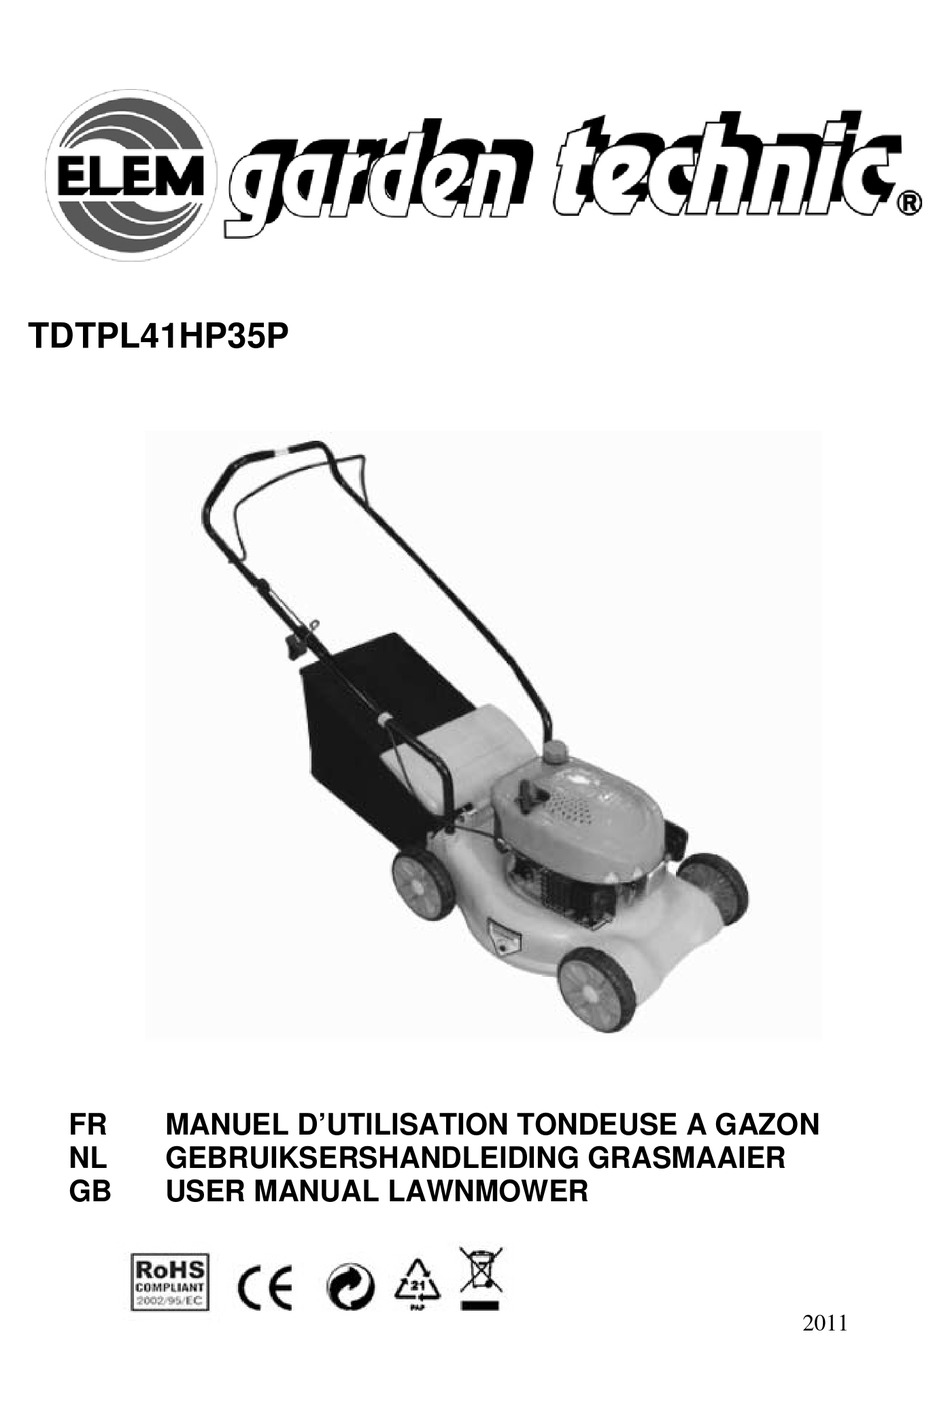 Lame de Rechange pour Tondeuse Thermique Elem Garden Technic TTAC46TM139-18